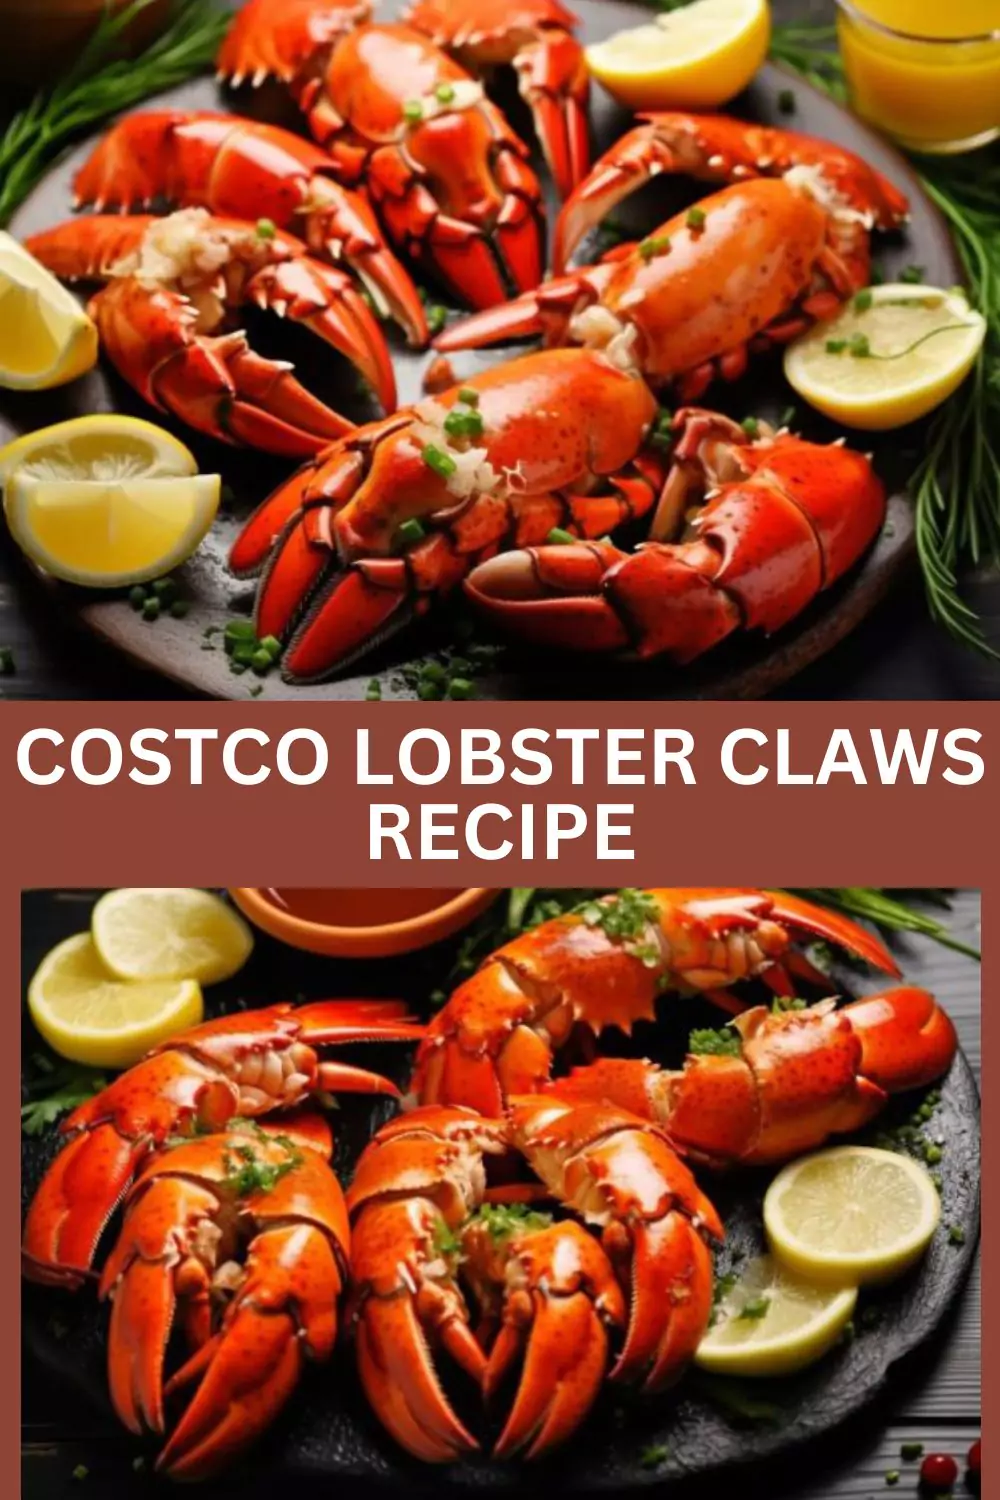 Costco Lobster Claws Recipe